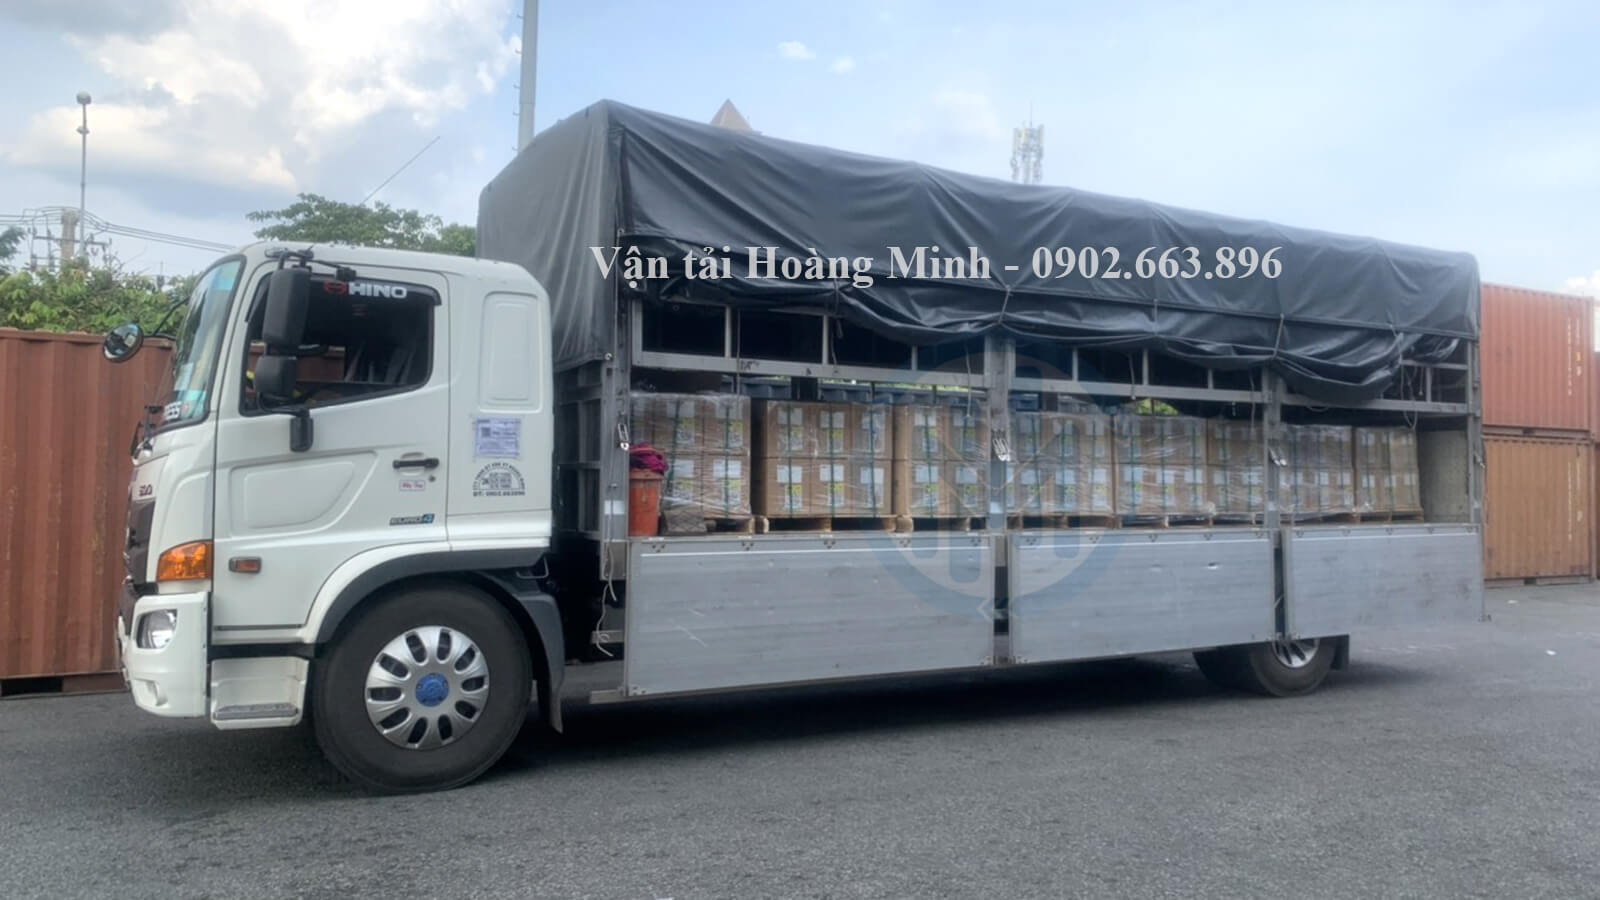 Cho thuê xe tải Thuận An uy tín số 1 thị trường vận tải.jpg